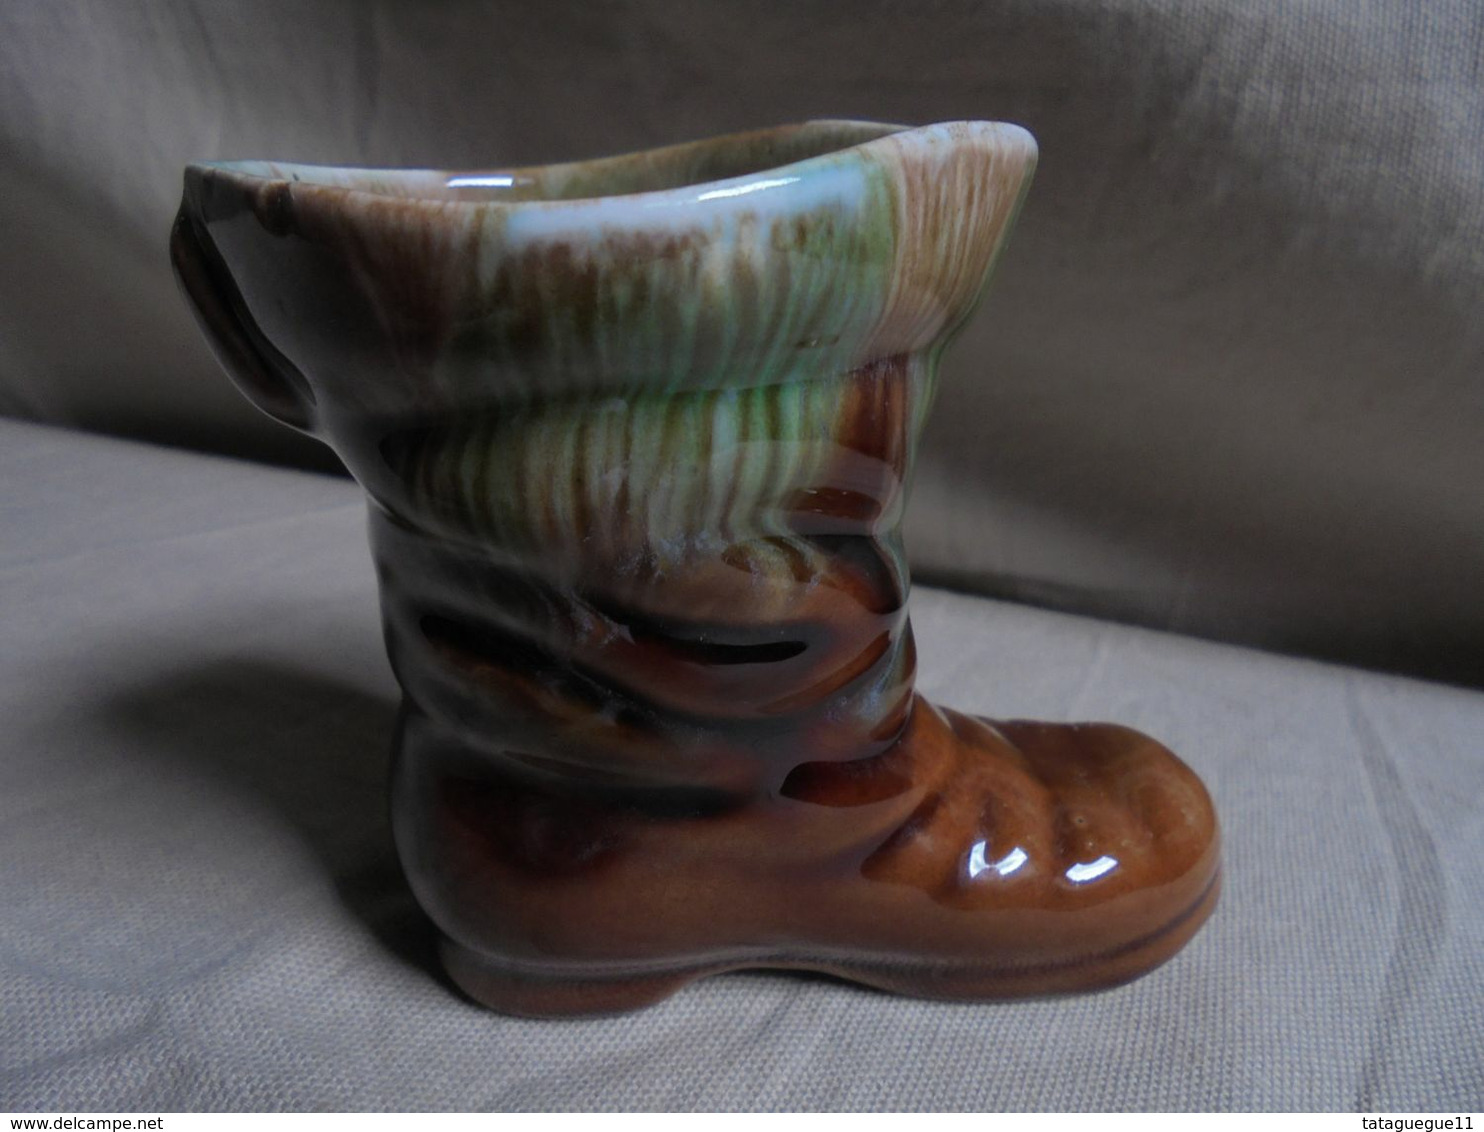 Ancien - Petit vase en céramique JMF en forme de "Botte des 7 lieux"